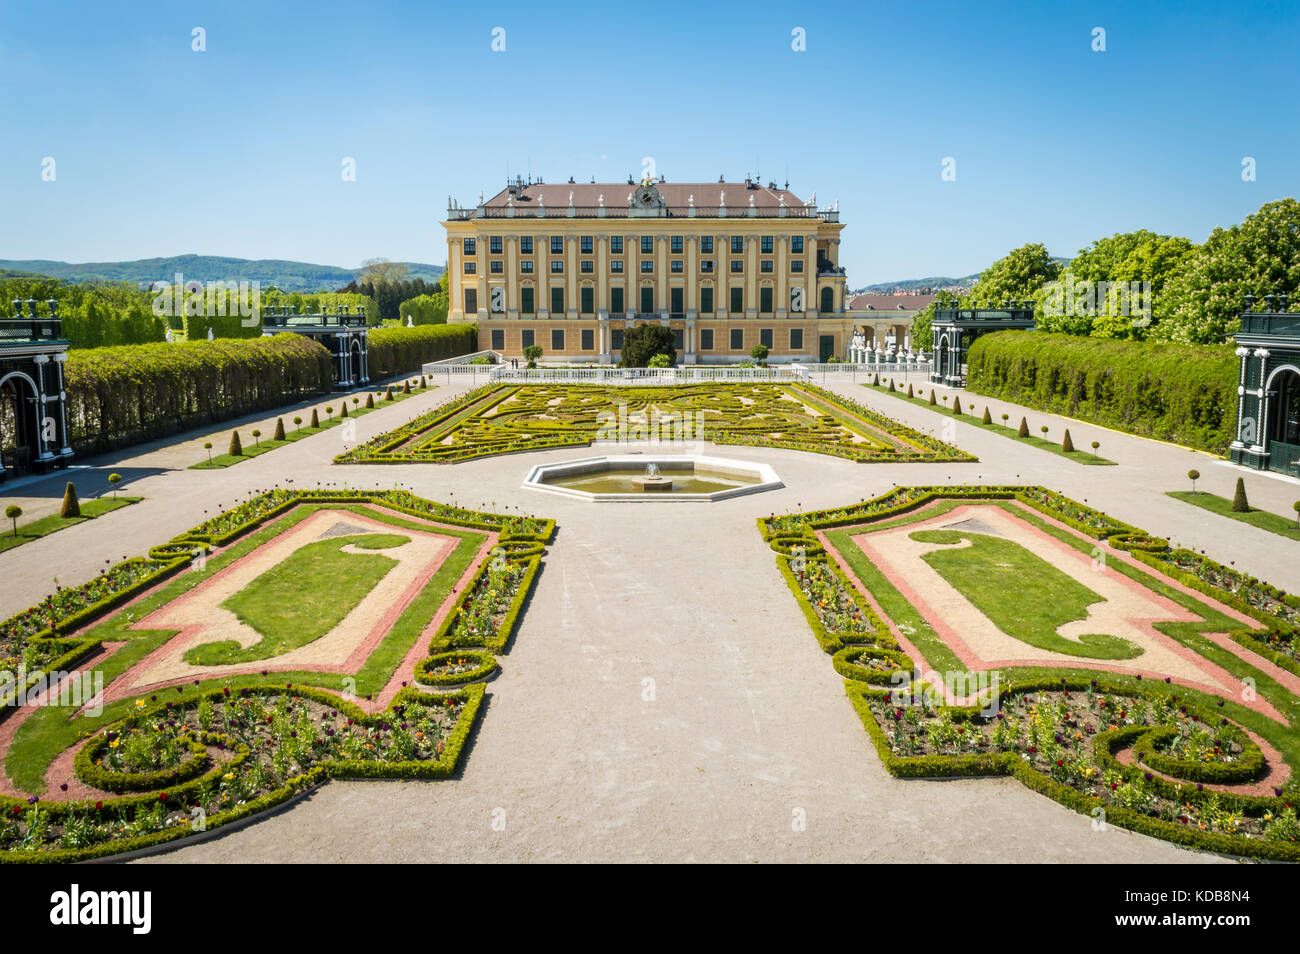 View of the Privy Garden at the Schönbrunn Palace in Austria, Vienna. Stock Photo